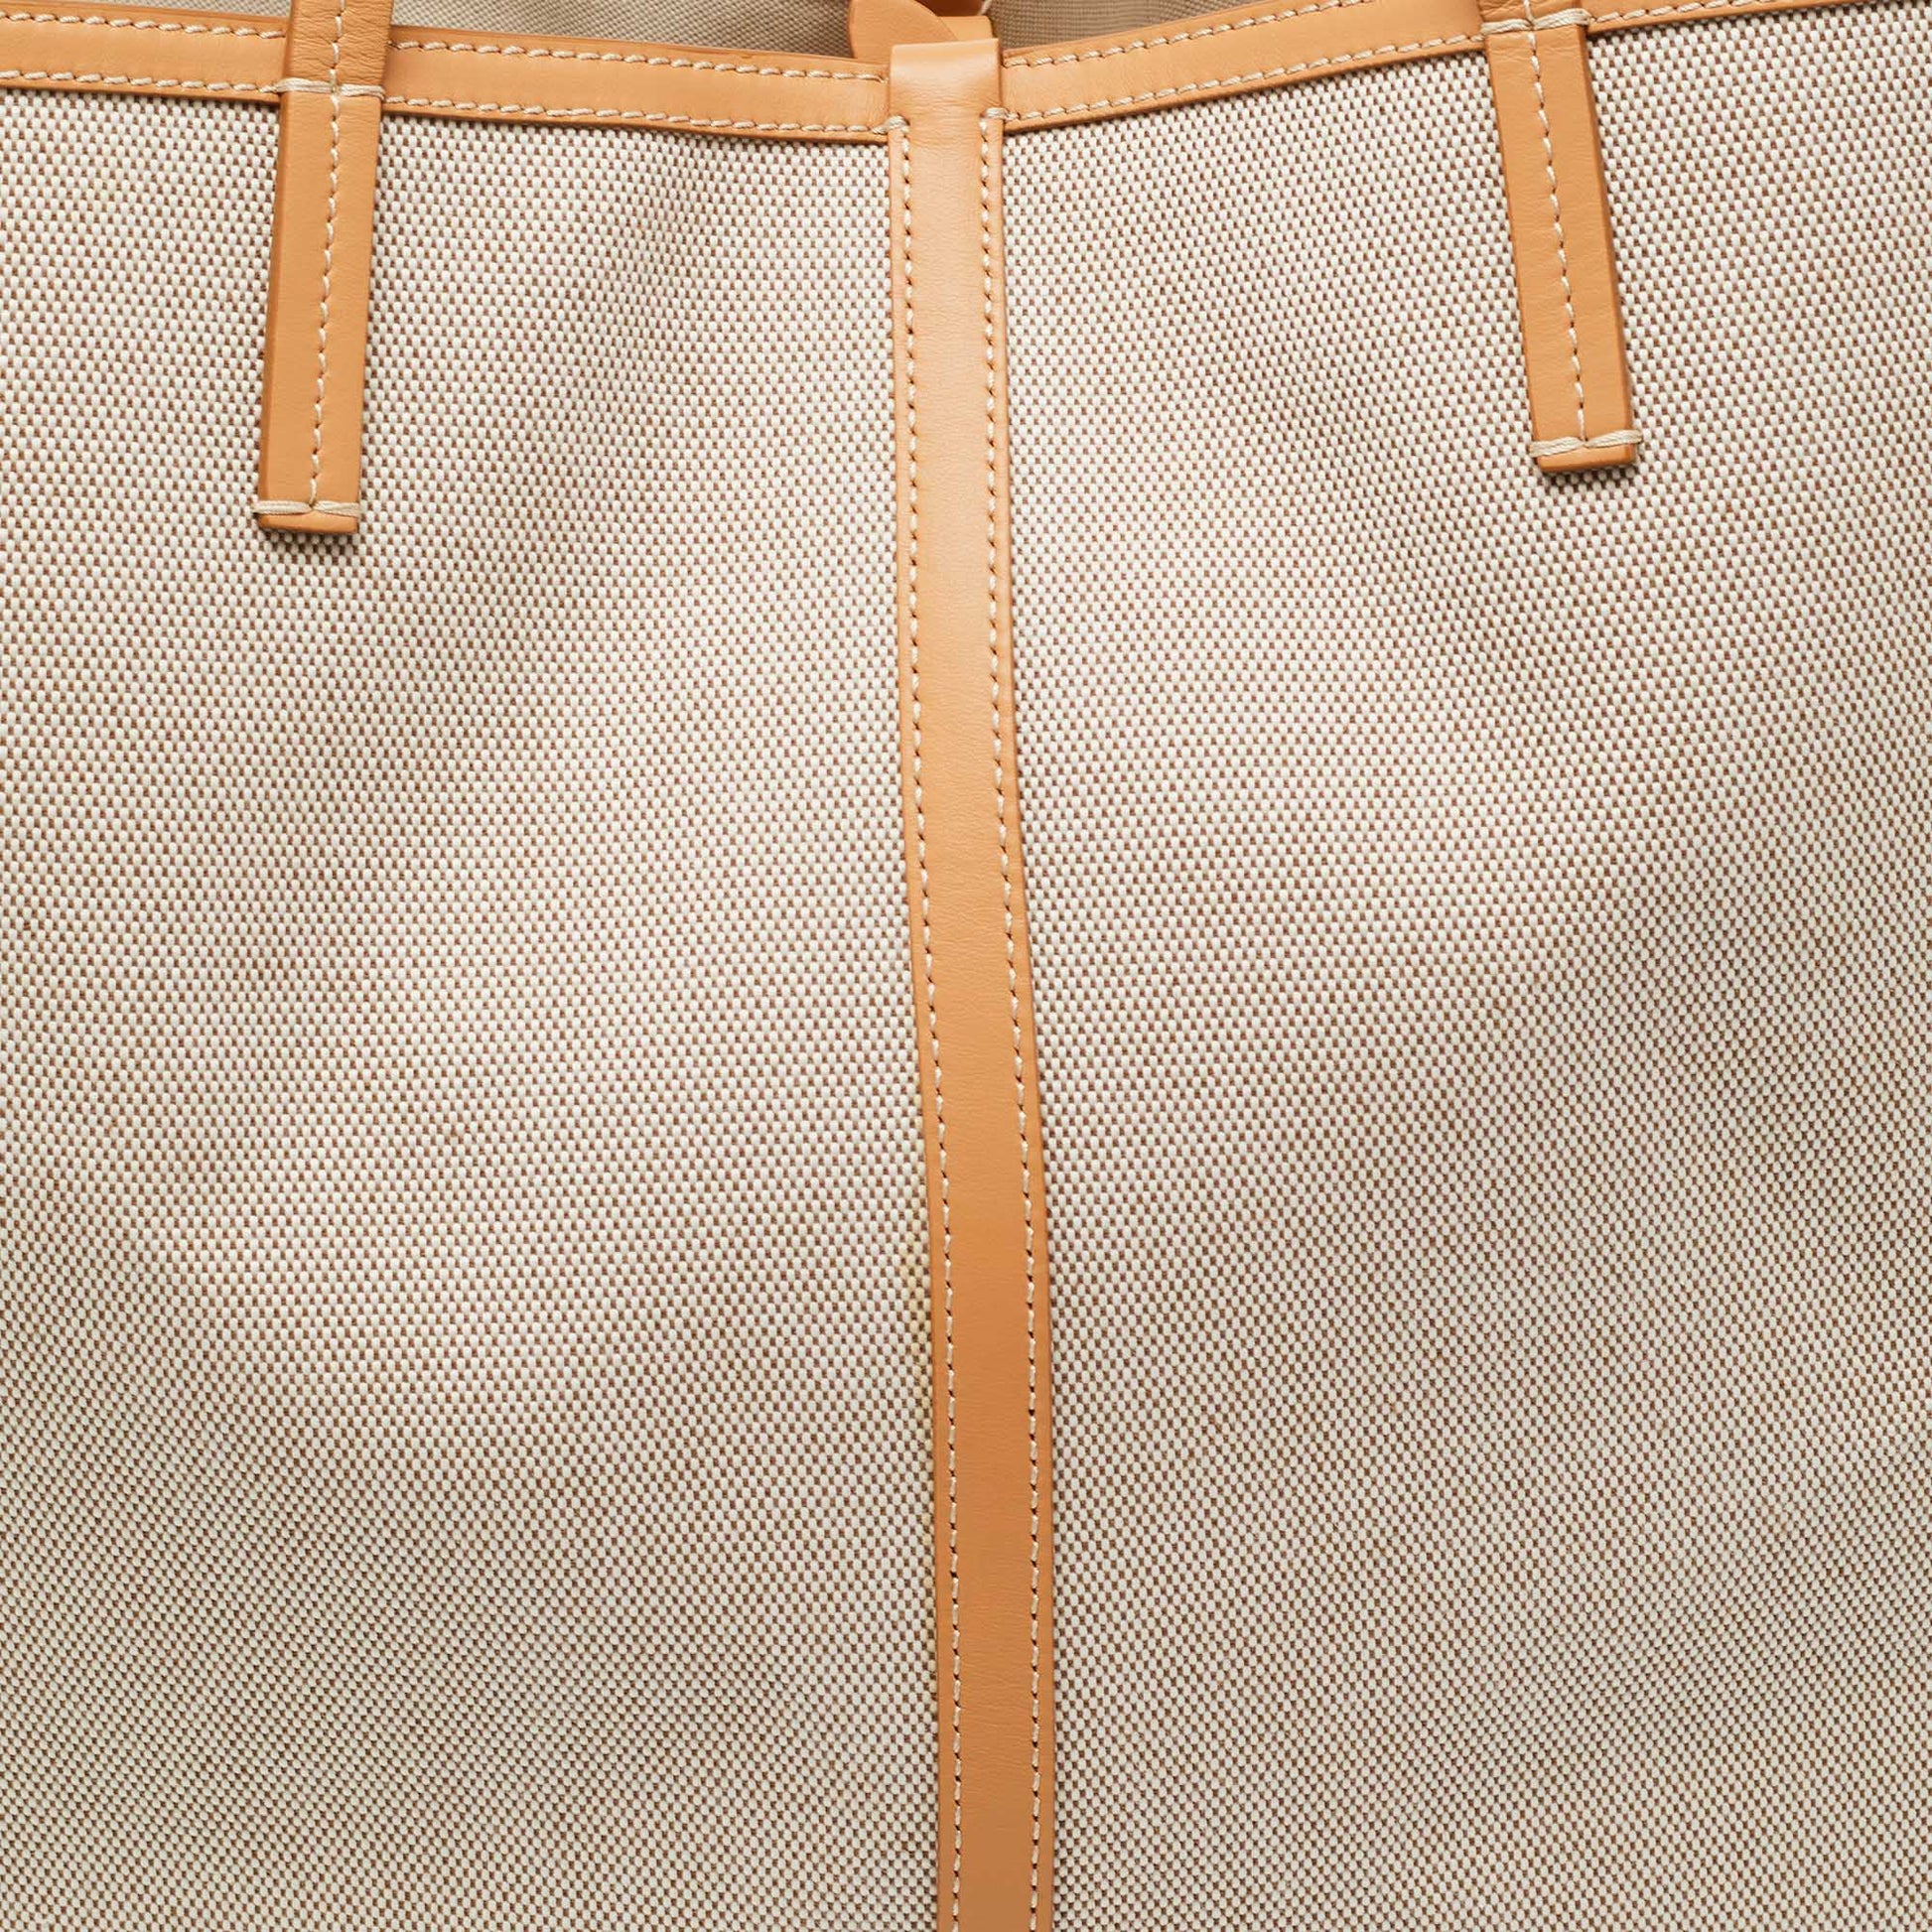 Louis Vuitton Stephen Boston Bag - ShopperBoard